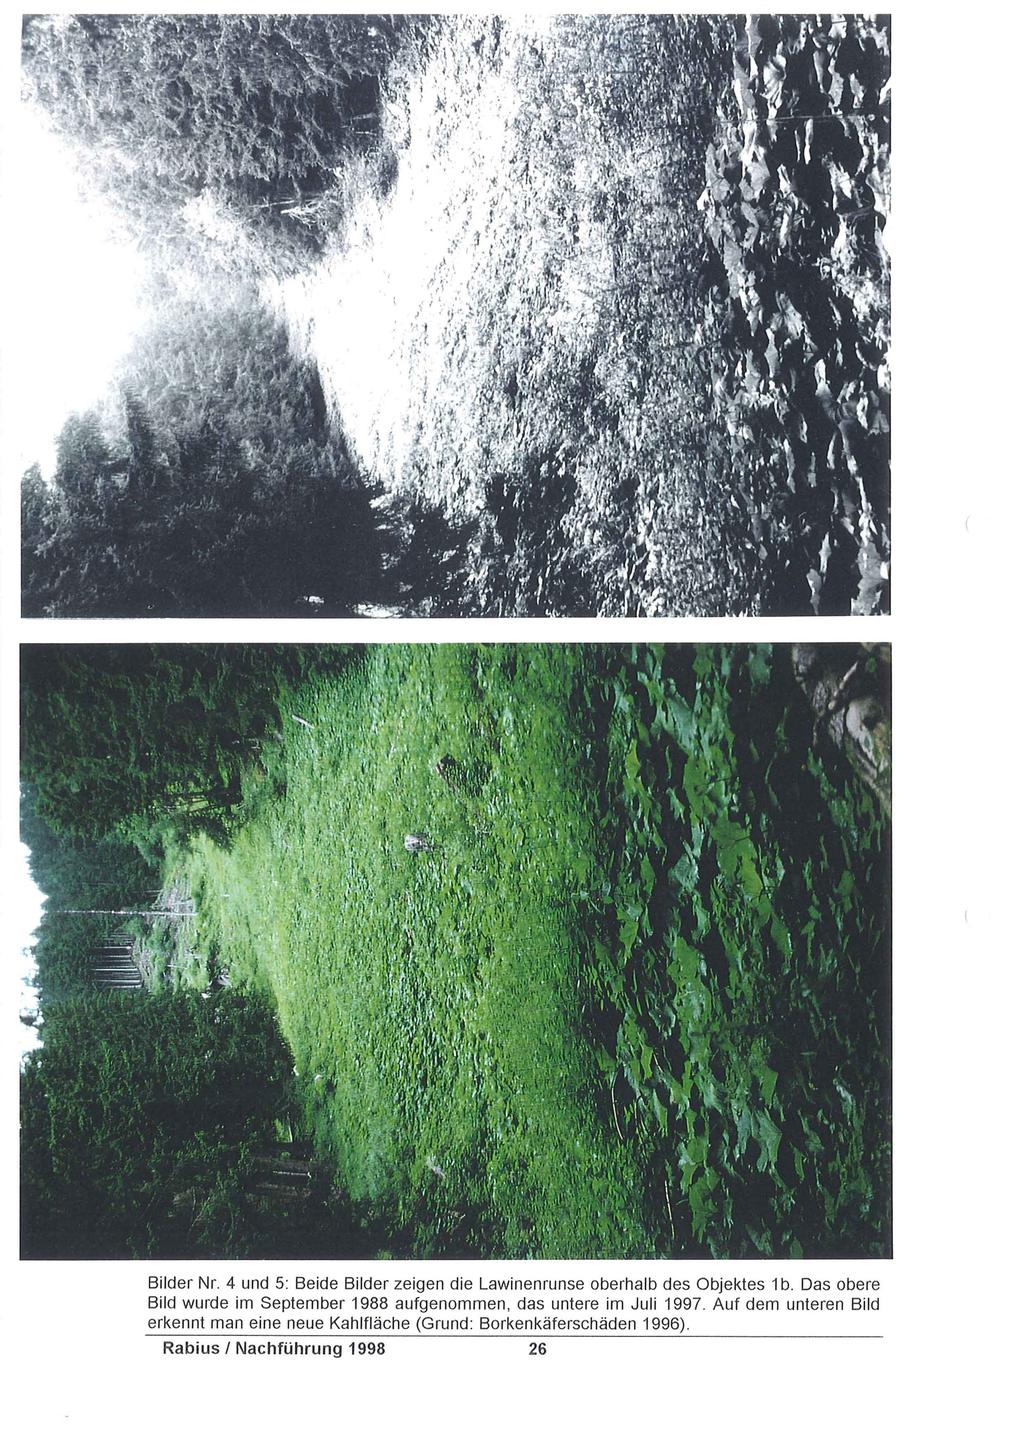 Bilder Nr. 4 und 5: Beide Bilder zeigen die Lawinenrunse oberhalb des Objektes 1 b.